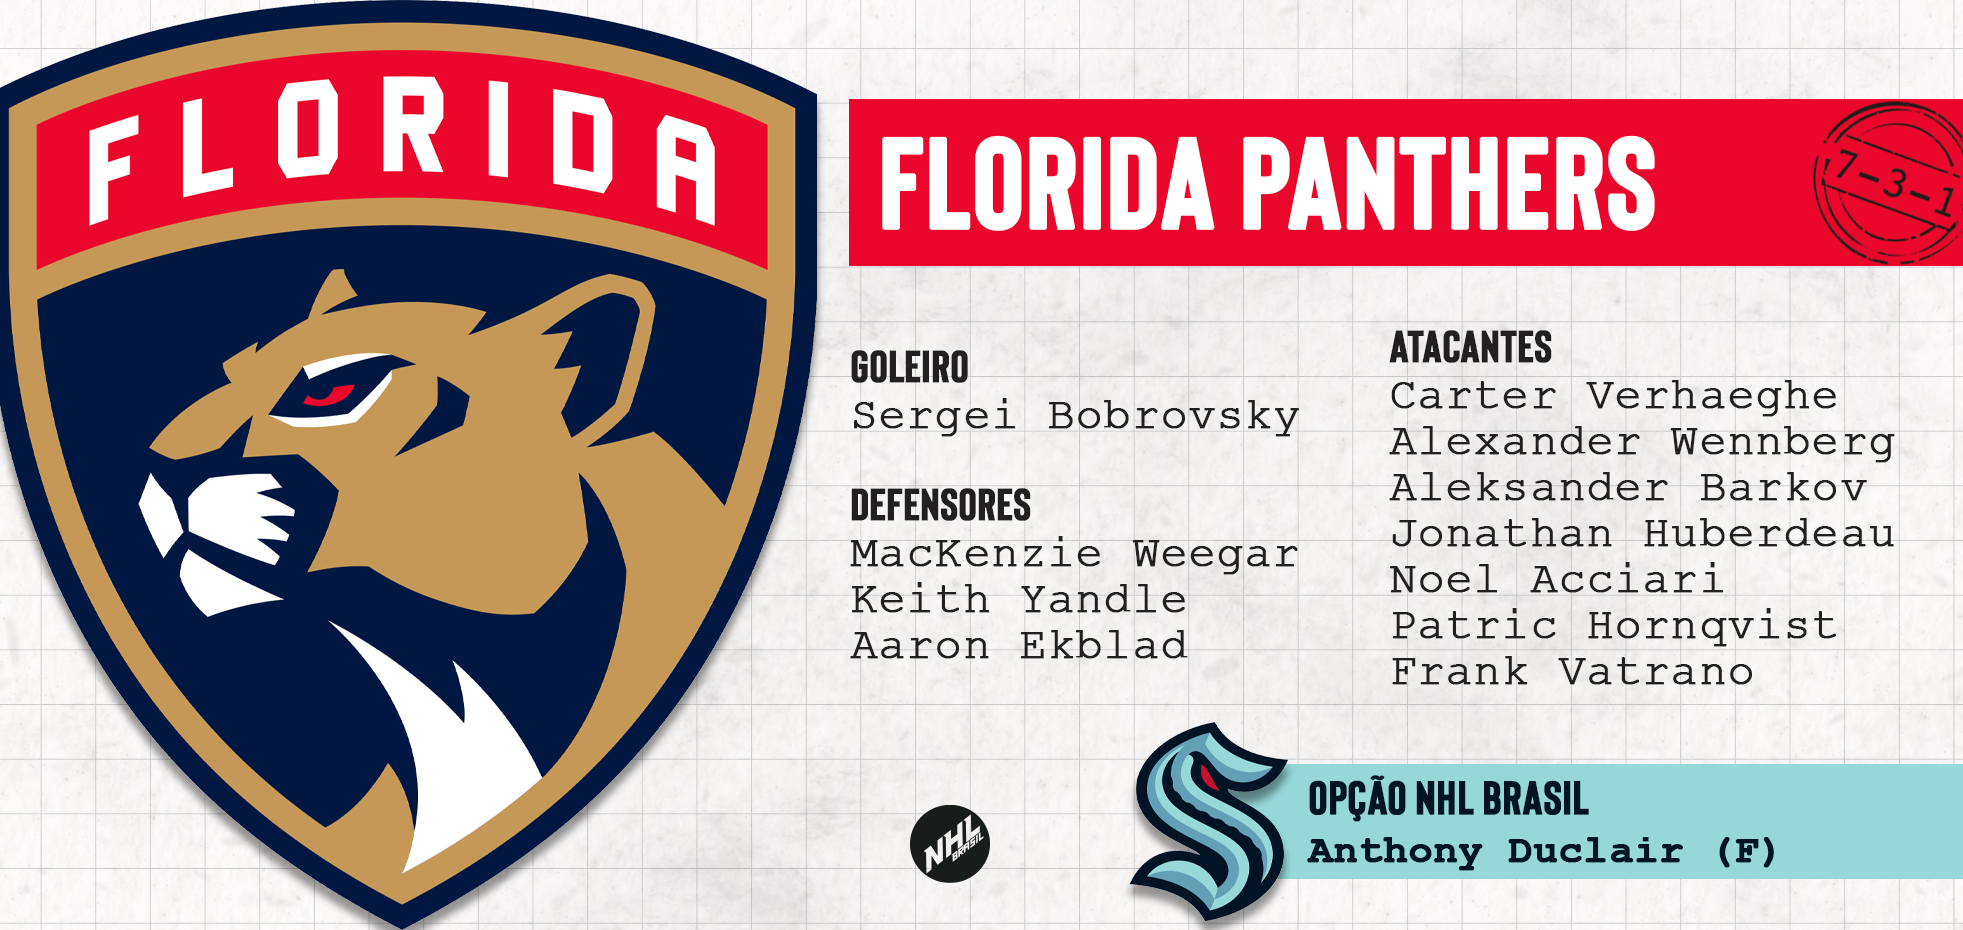 FLORIDA PANTHERS - lista de jogadores protegidos na Divisão Atlântica da NHL